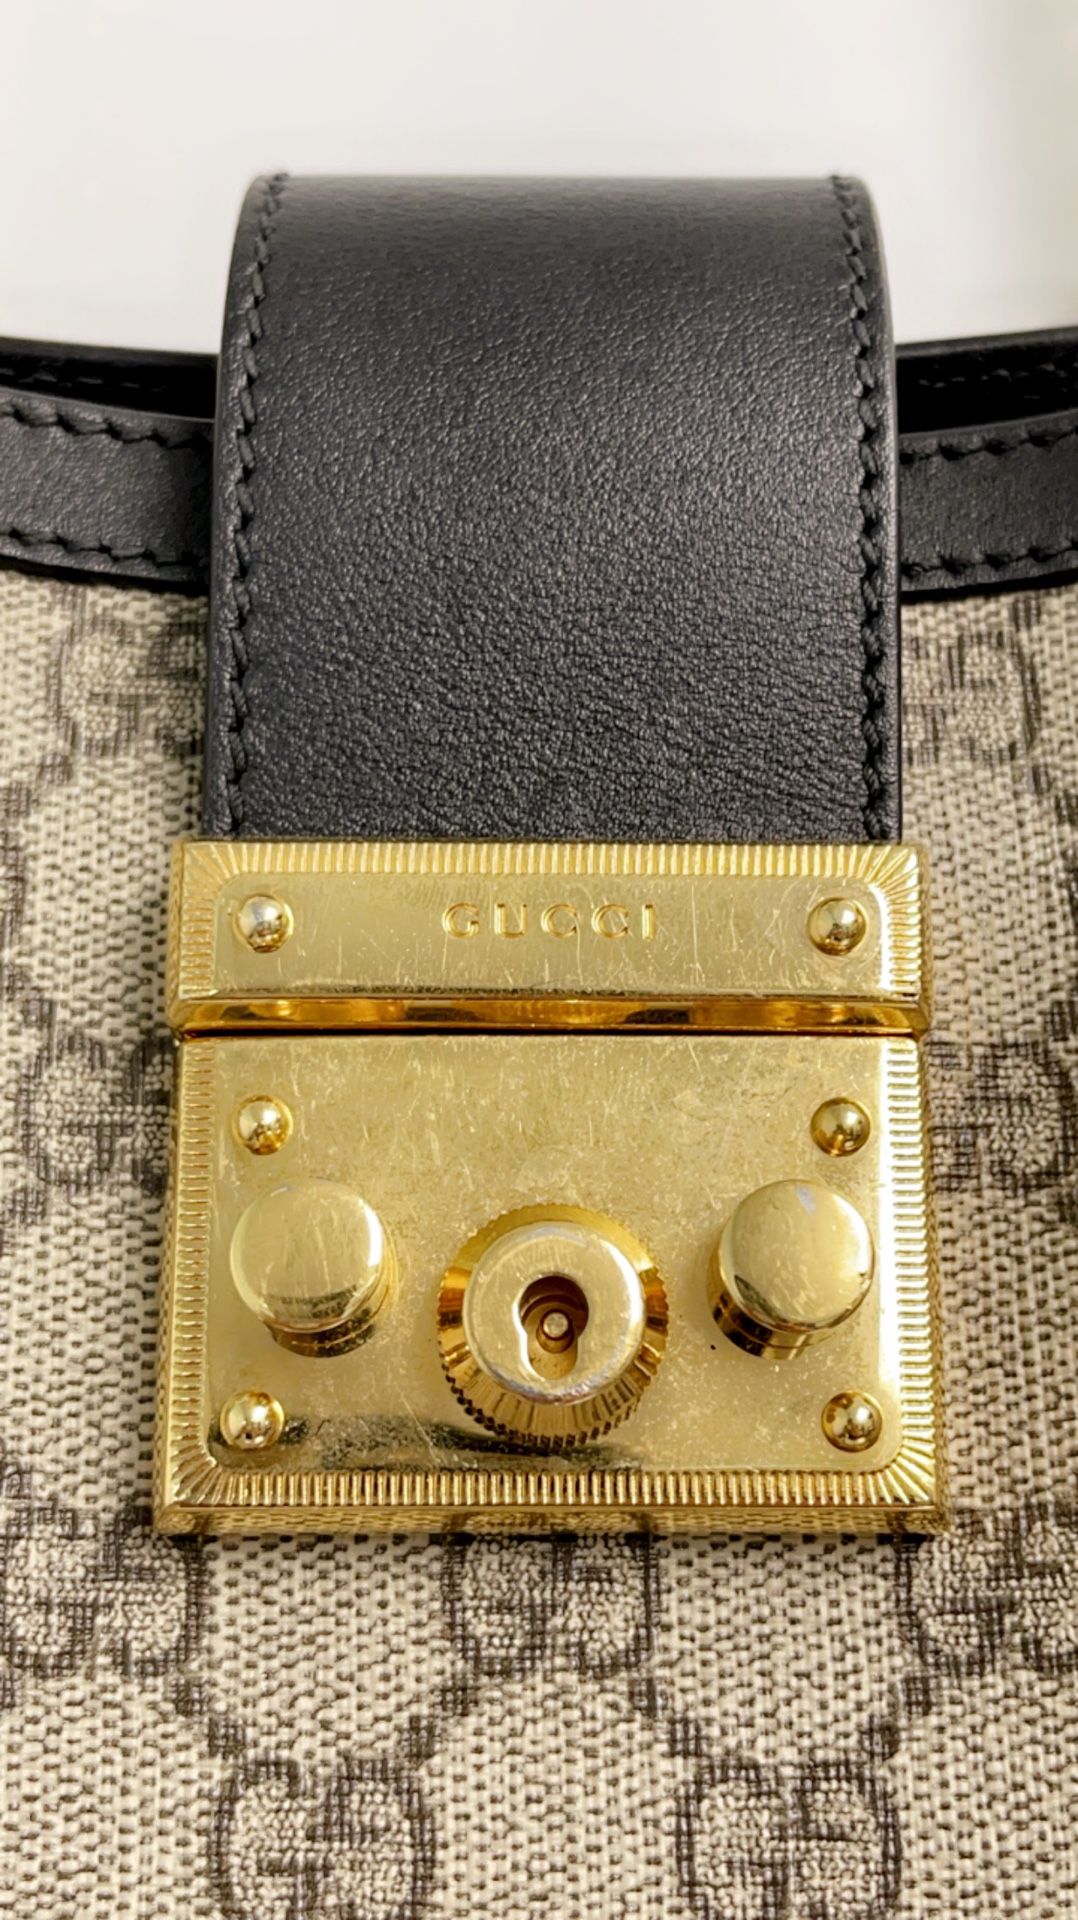 Gucci Padlock Mini Bag - Neutrals